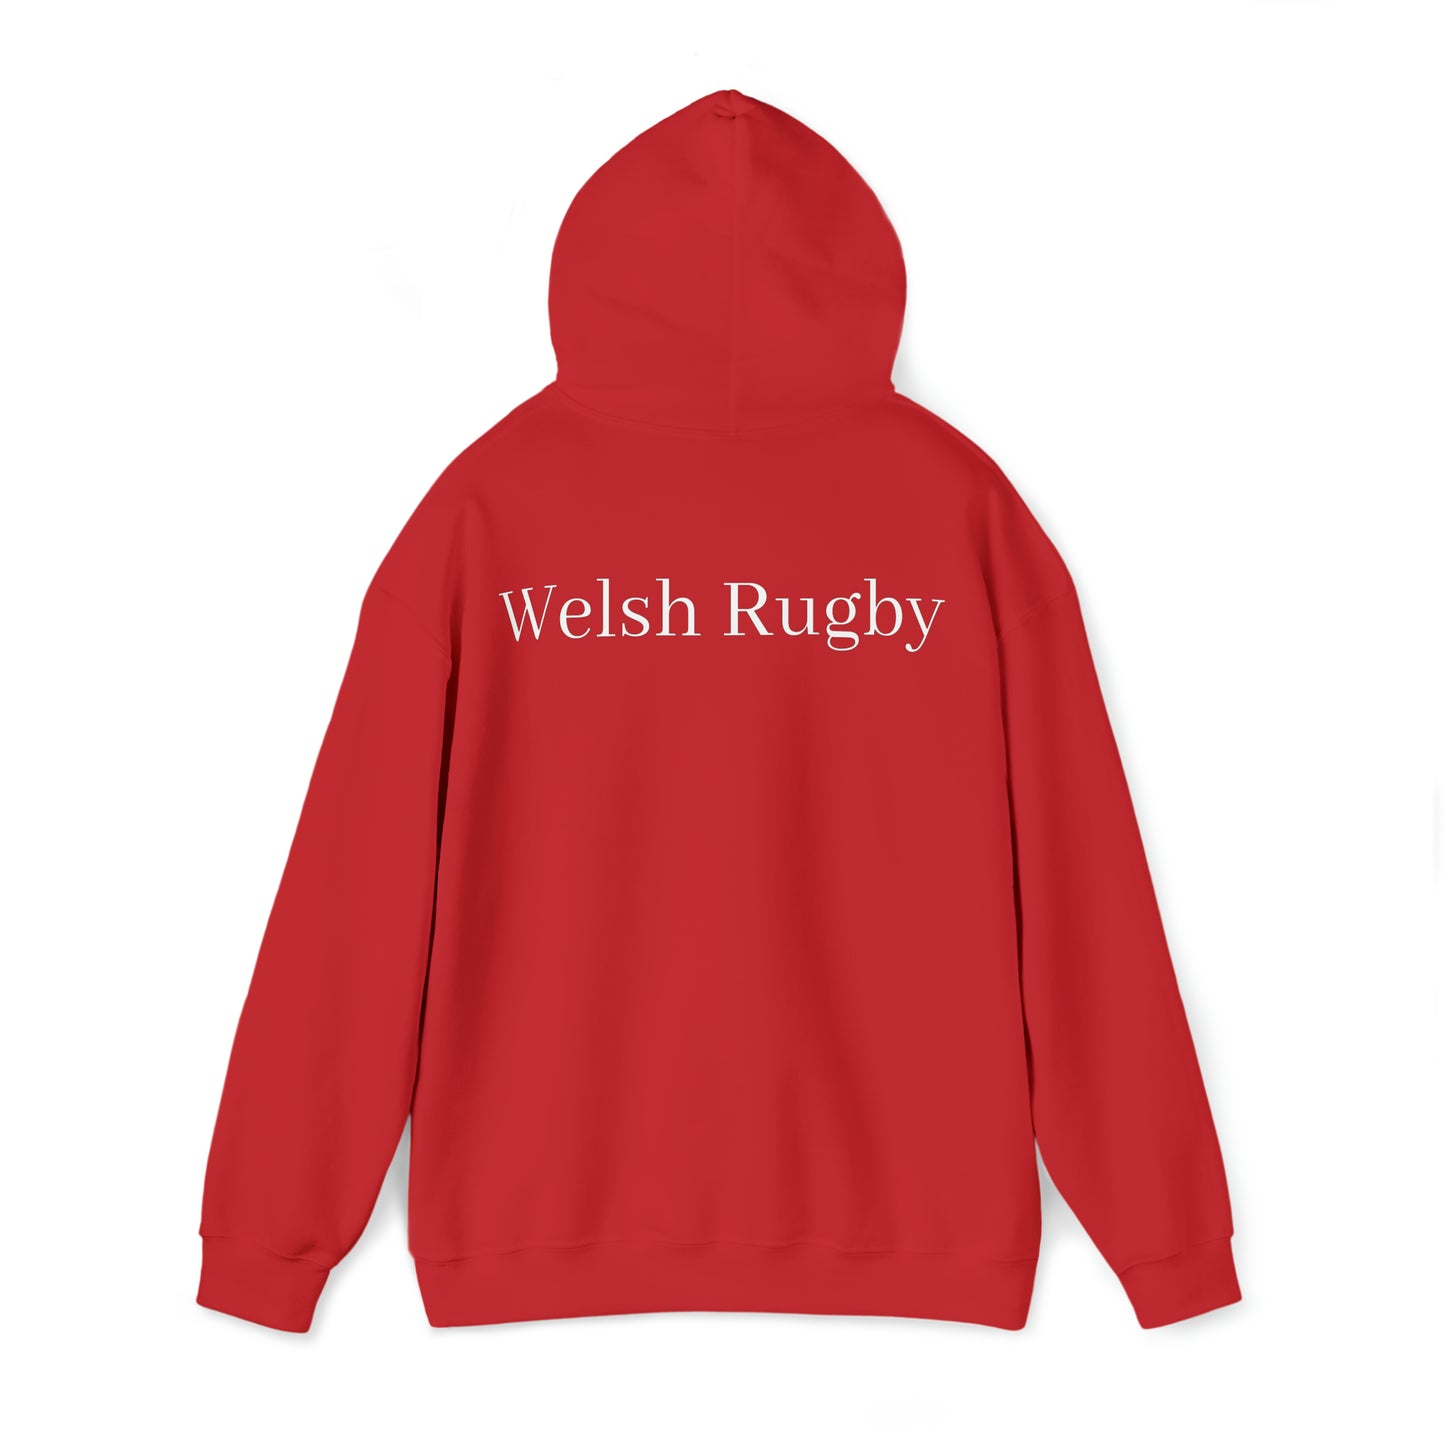 Wales Celebrating - dark hoodies